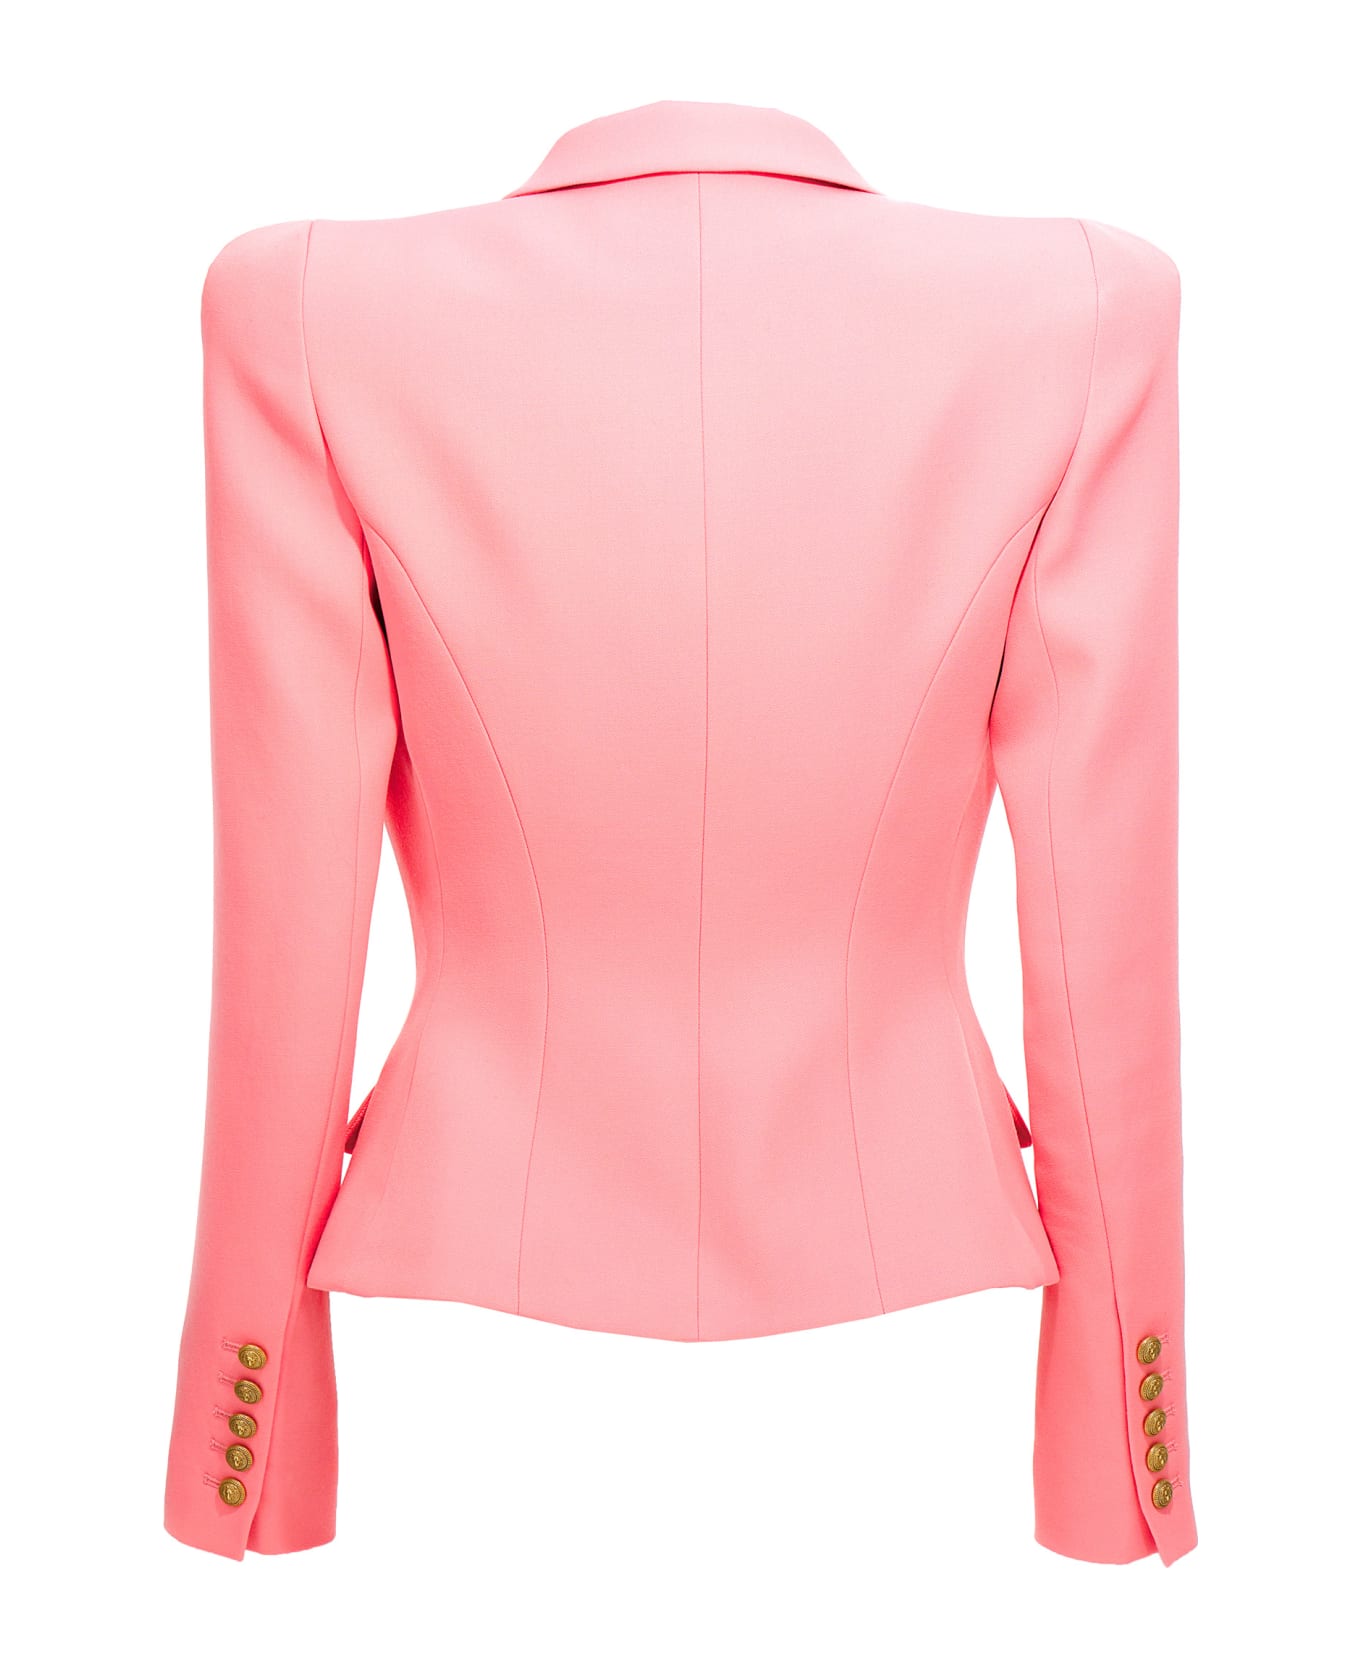 Balmain Pink Wool Jacket - Pink